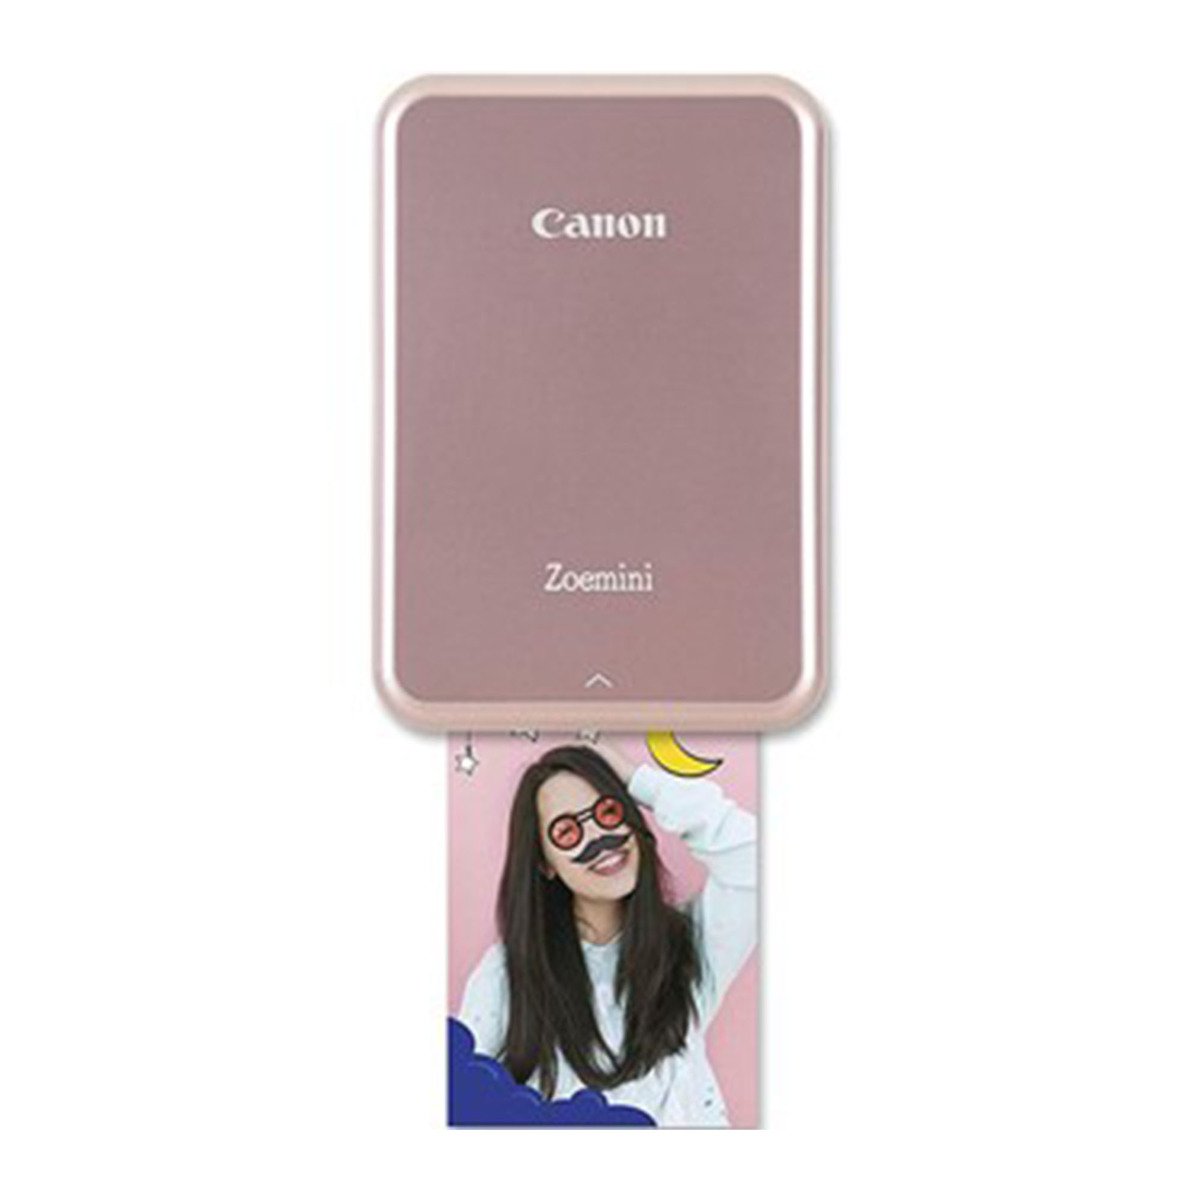 Canon  Zoemini Photo Printer PV-123, Rose Gold